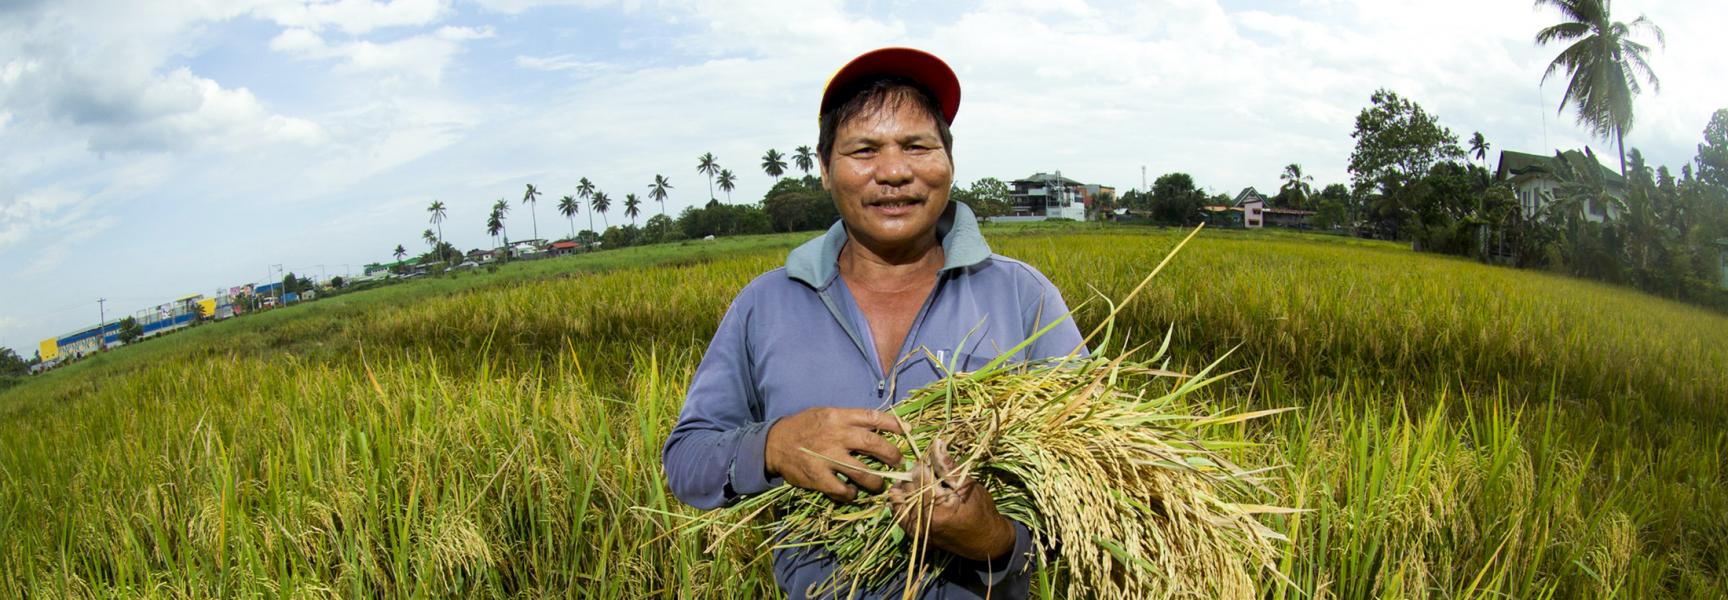 Un agriculteur à Mindanao, Philippines, 2017